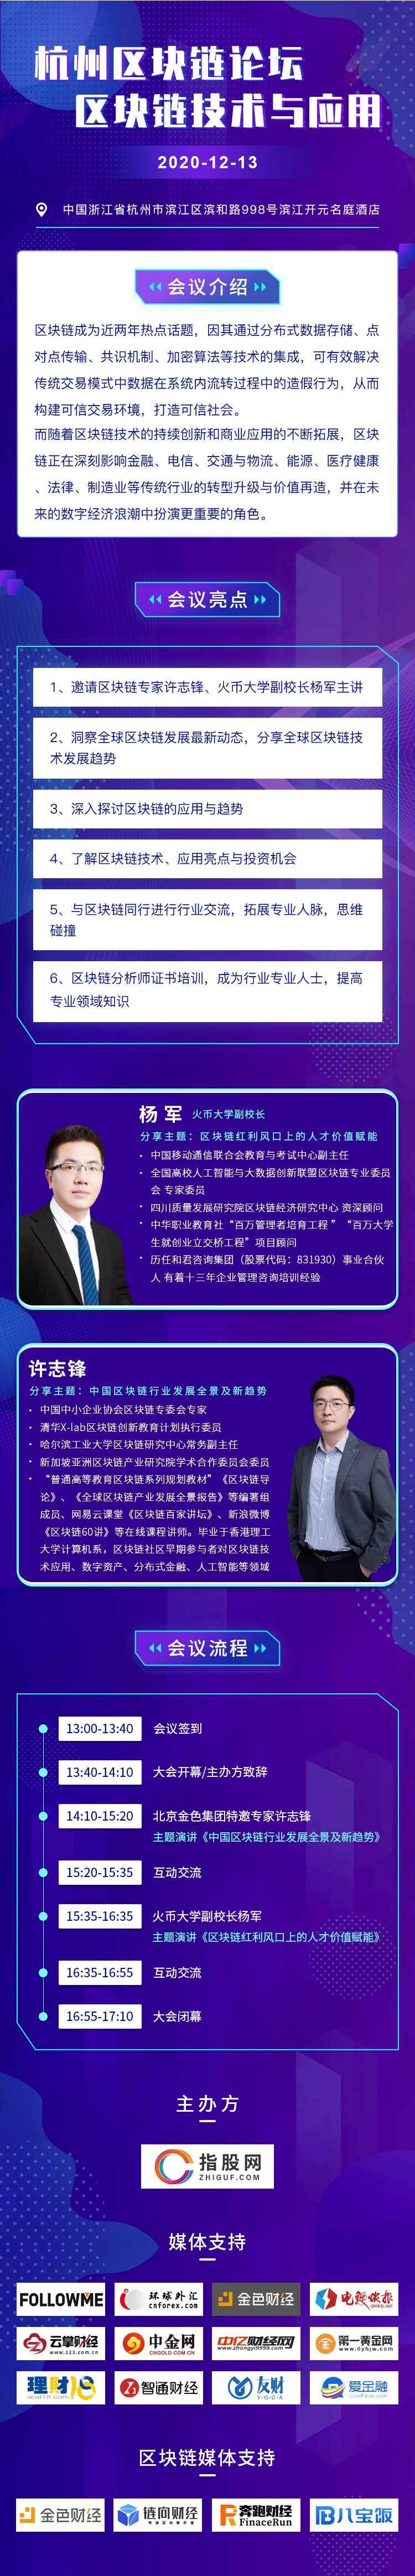  2020杭州区块链峰会